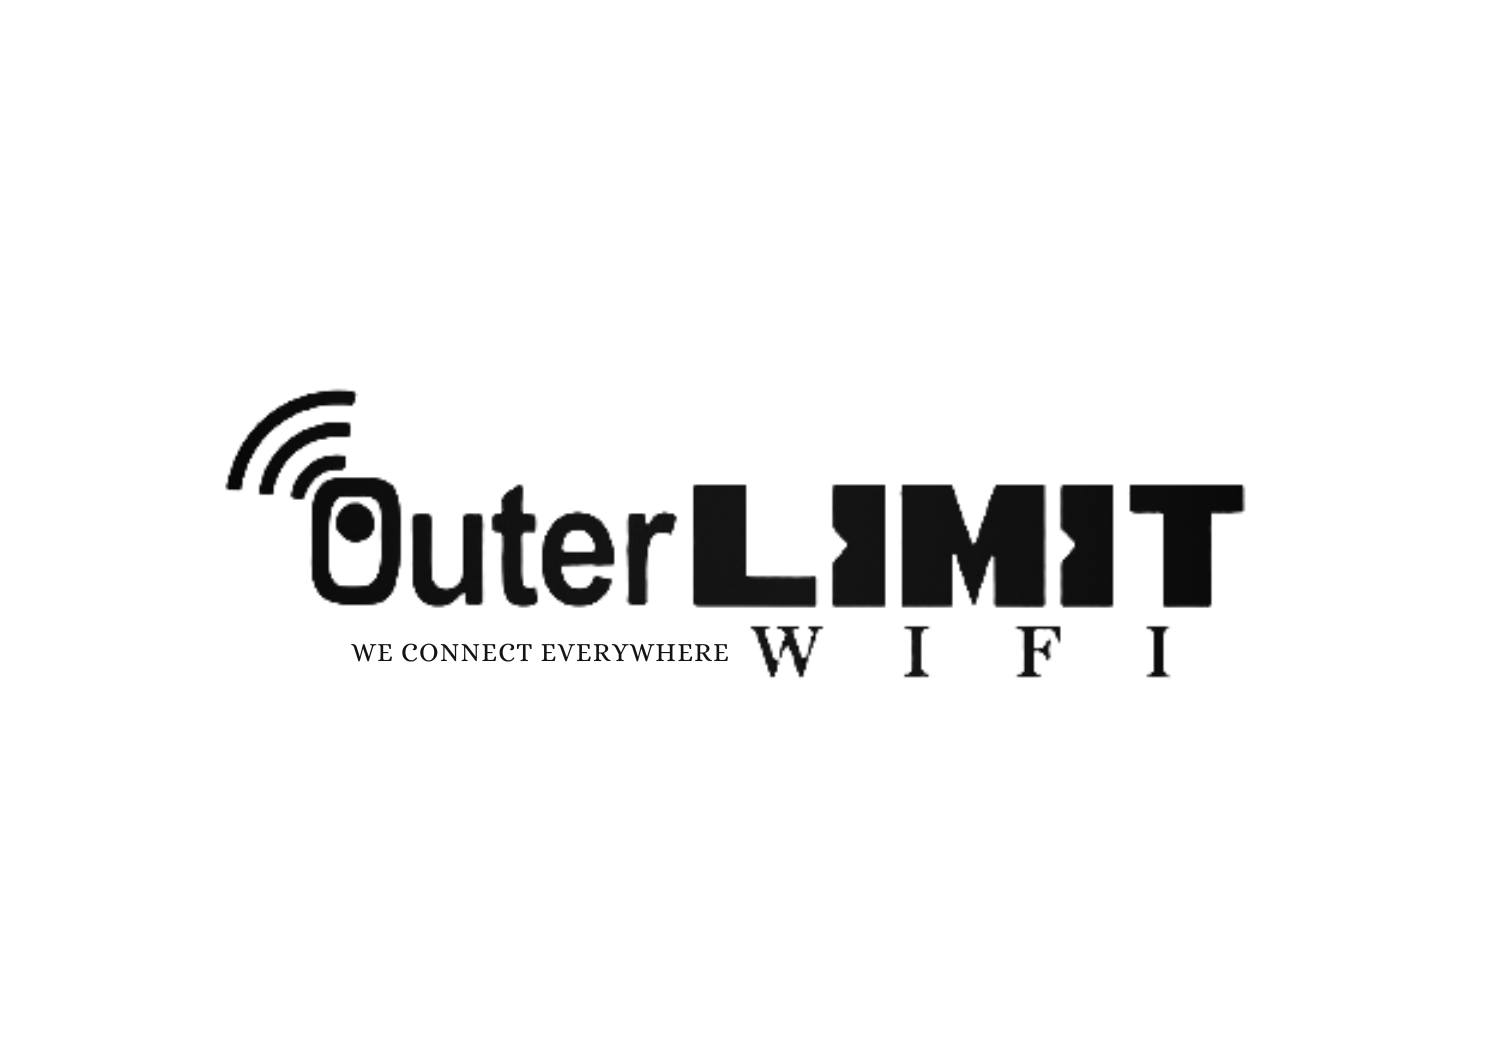 Outer-Limit-Wi-Fi-logo.jpg